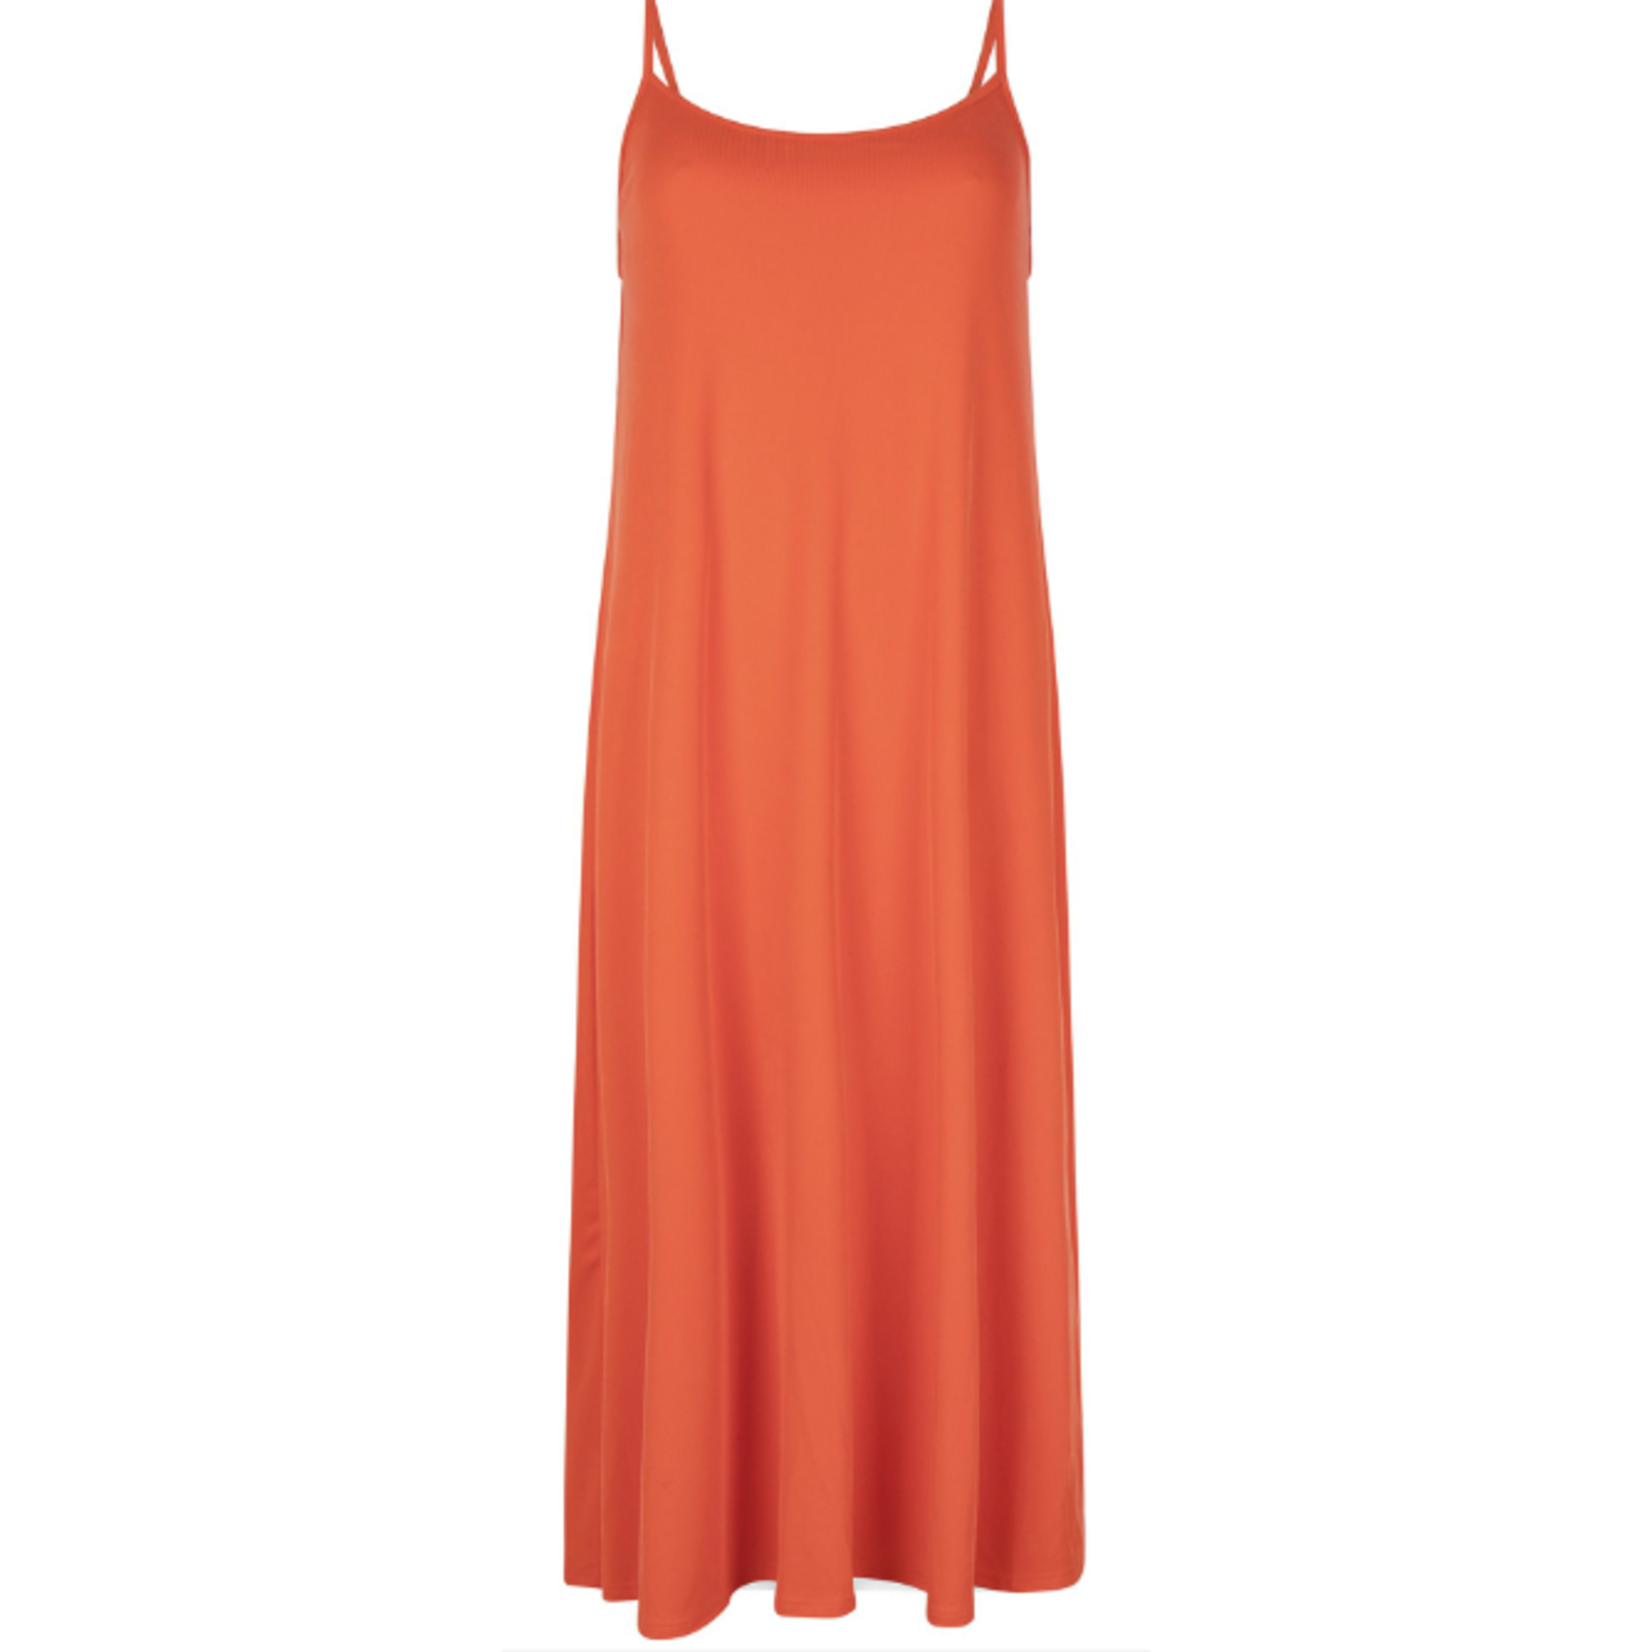 Ydence Koraal rode maxi dress voor de zomer - ook in een mooie print